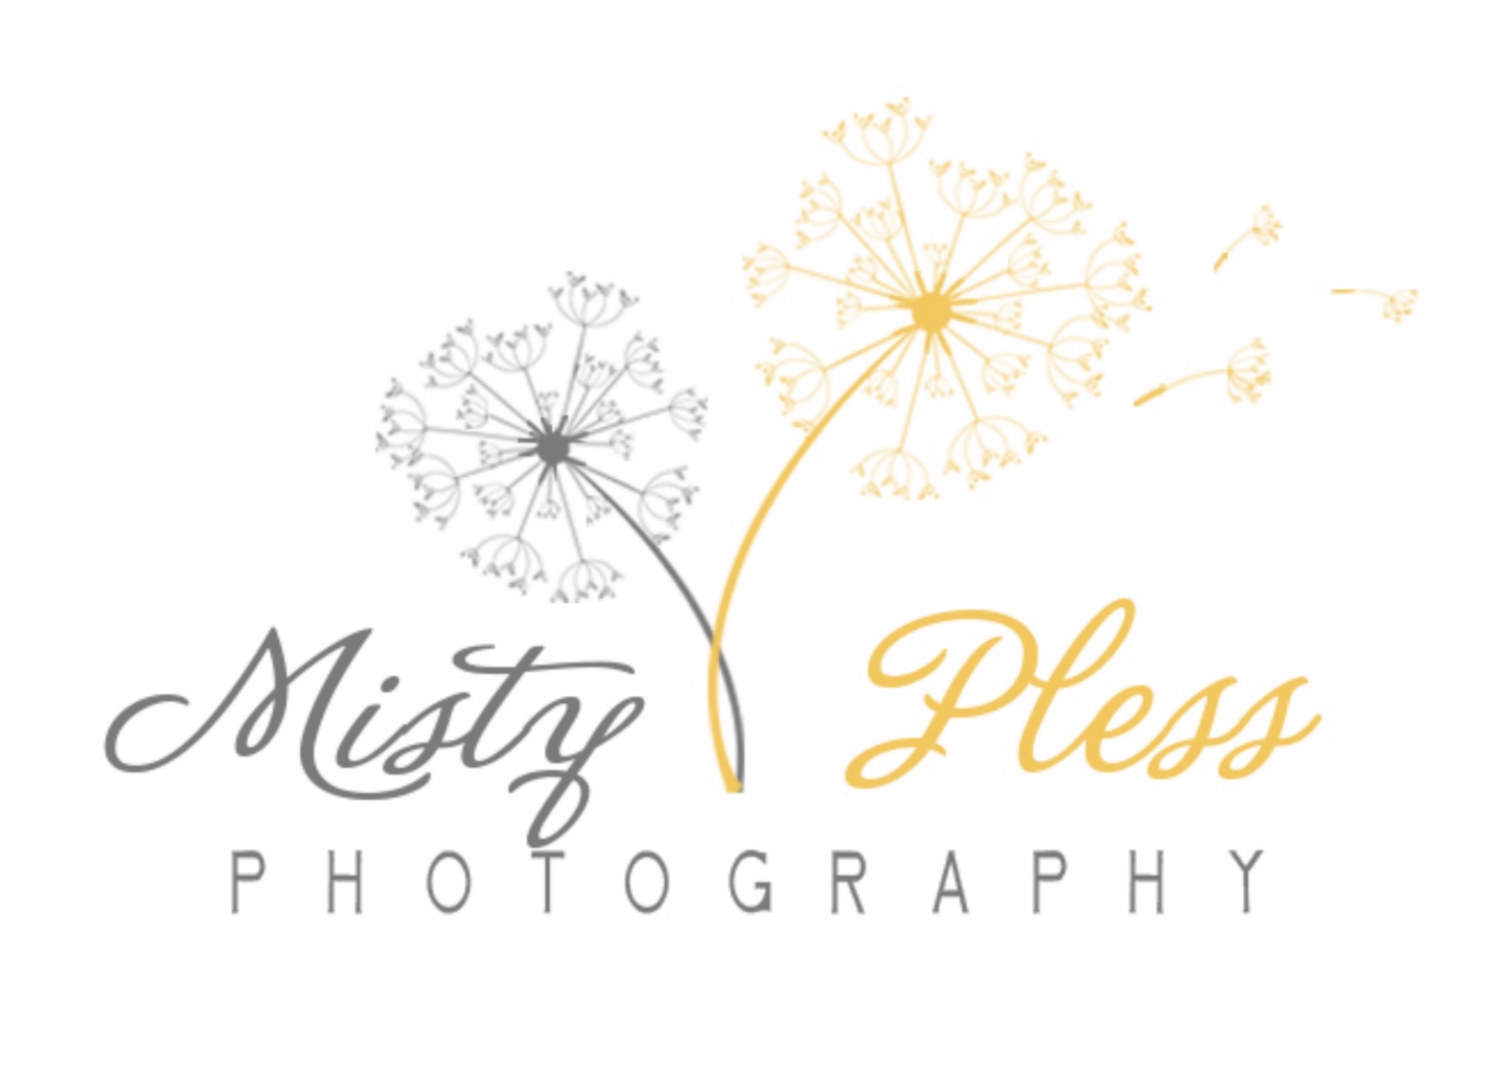 Misty Pless Photography